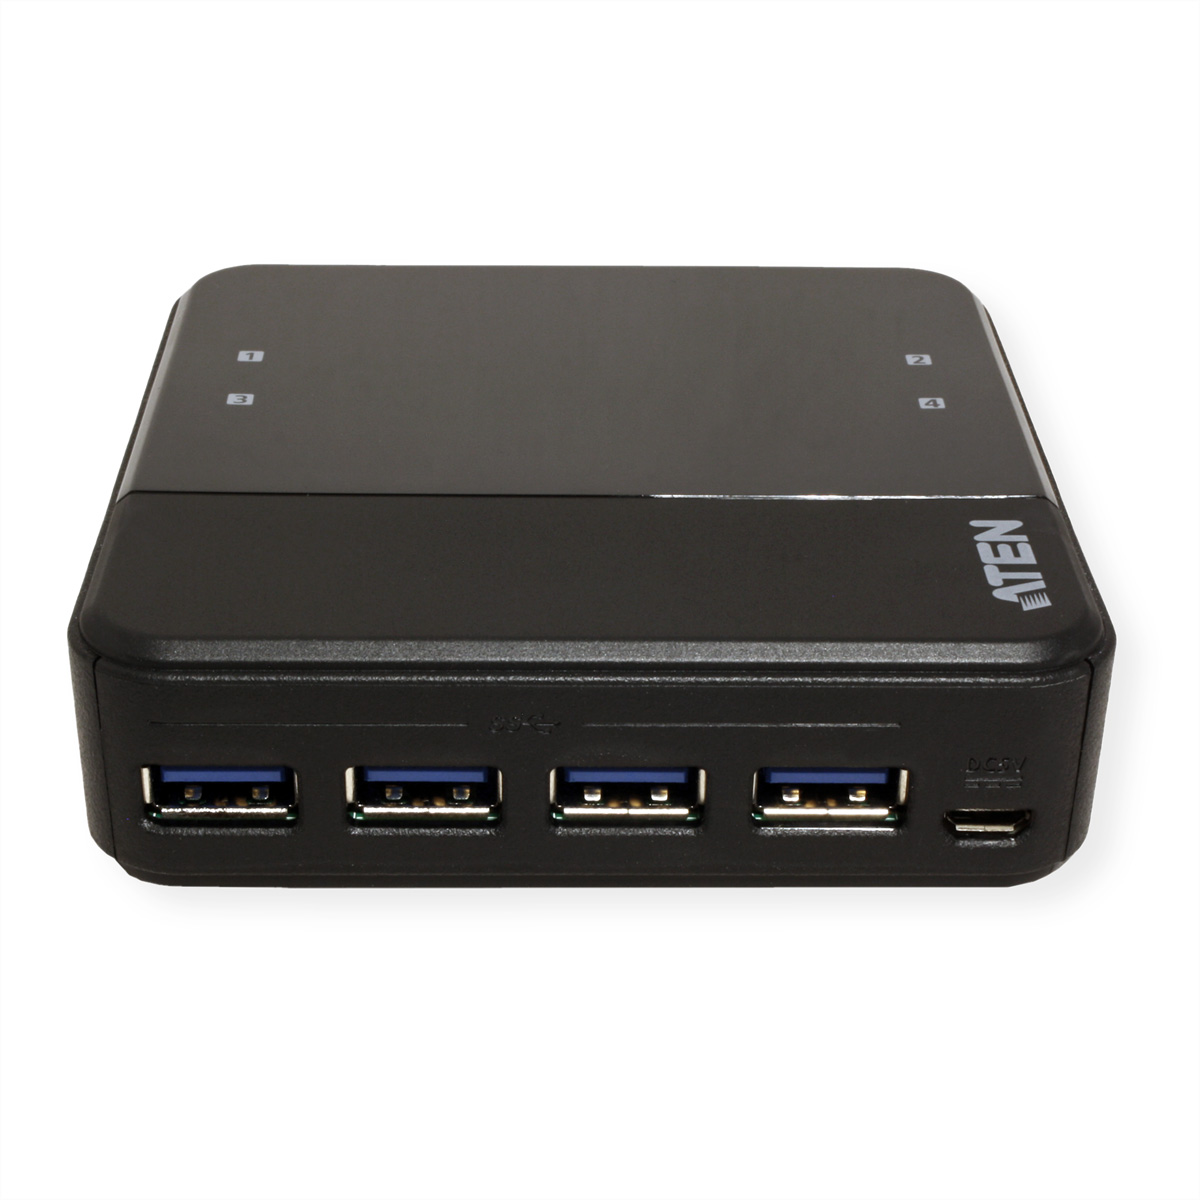 ATEN US3344 automatisch, Switchbox, 4-Port schwarz USB-C zu Sharing, USB